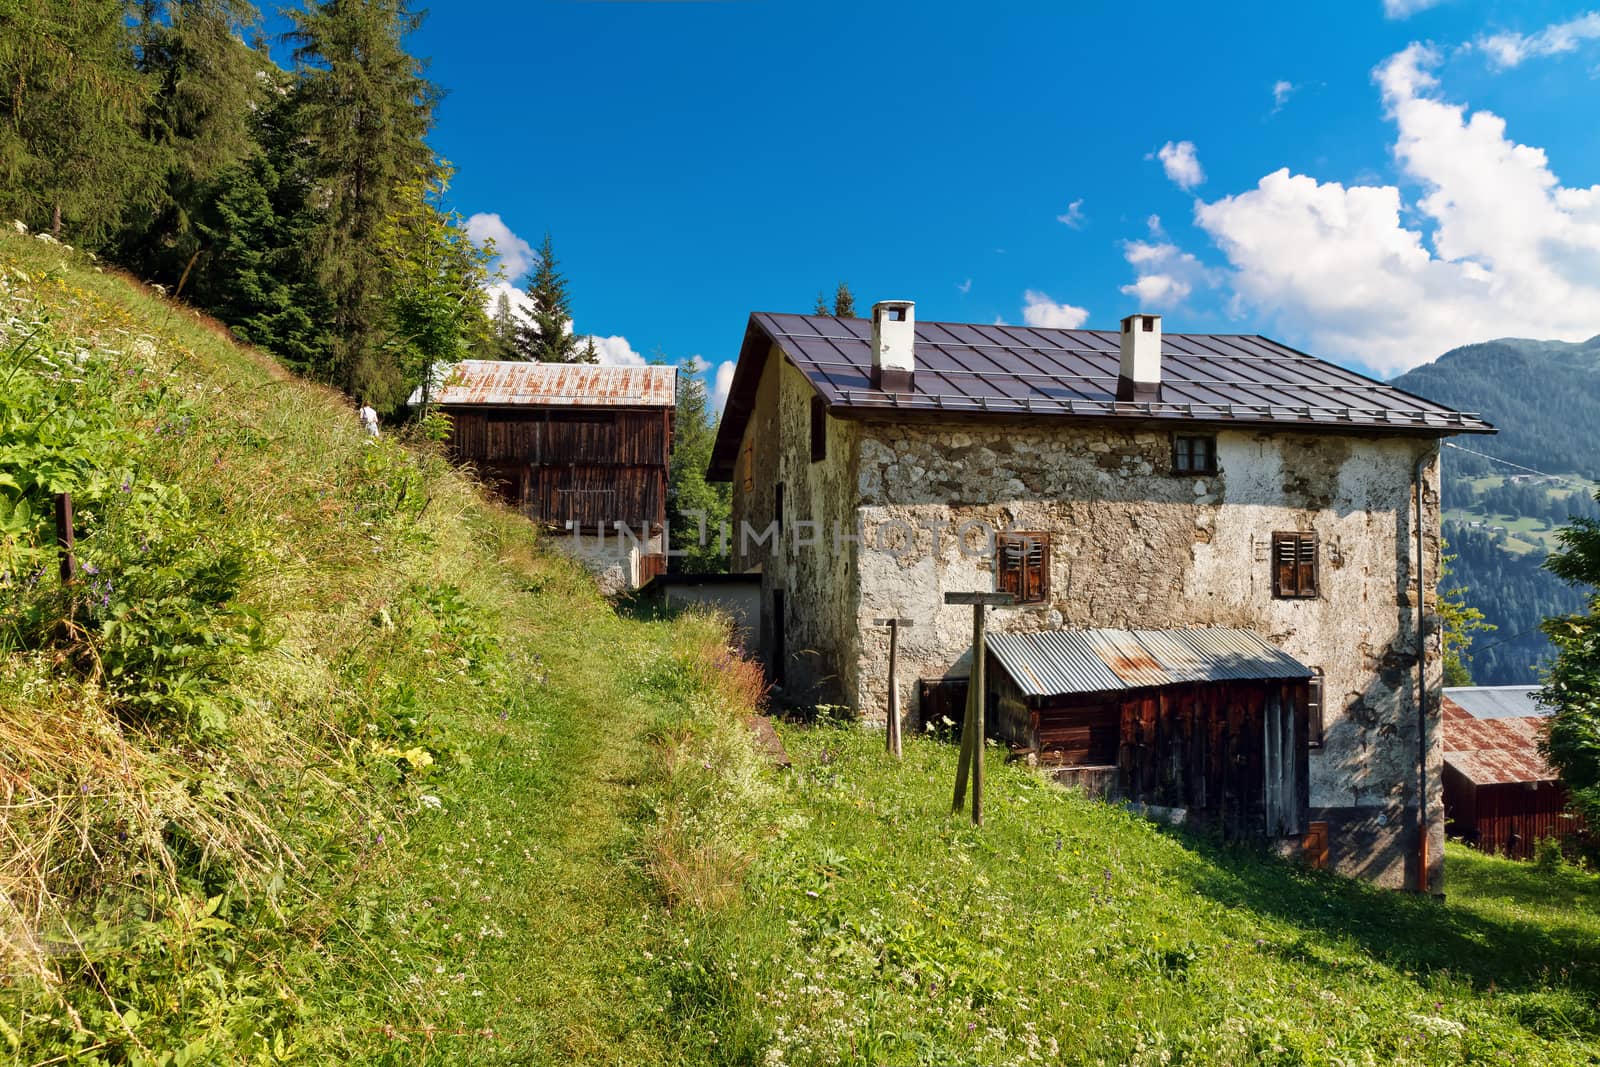 barn in a green field in Ronch, small village in Italian dolomites